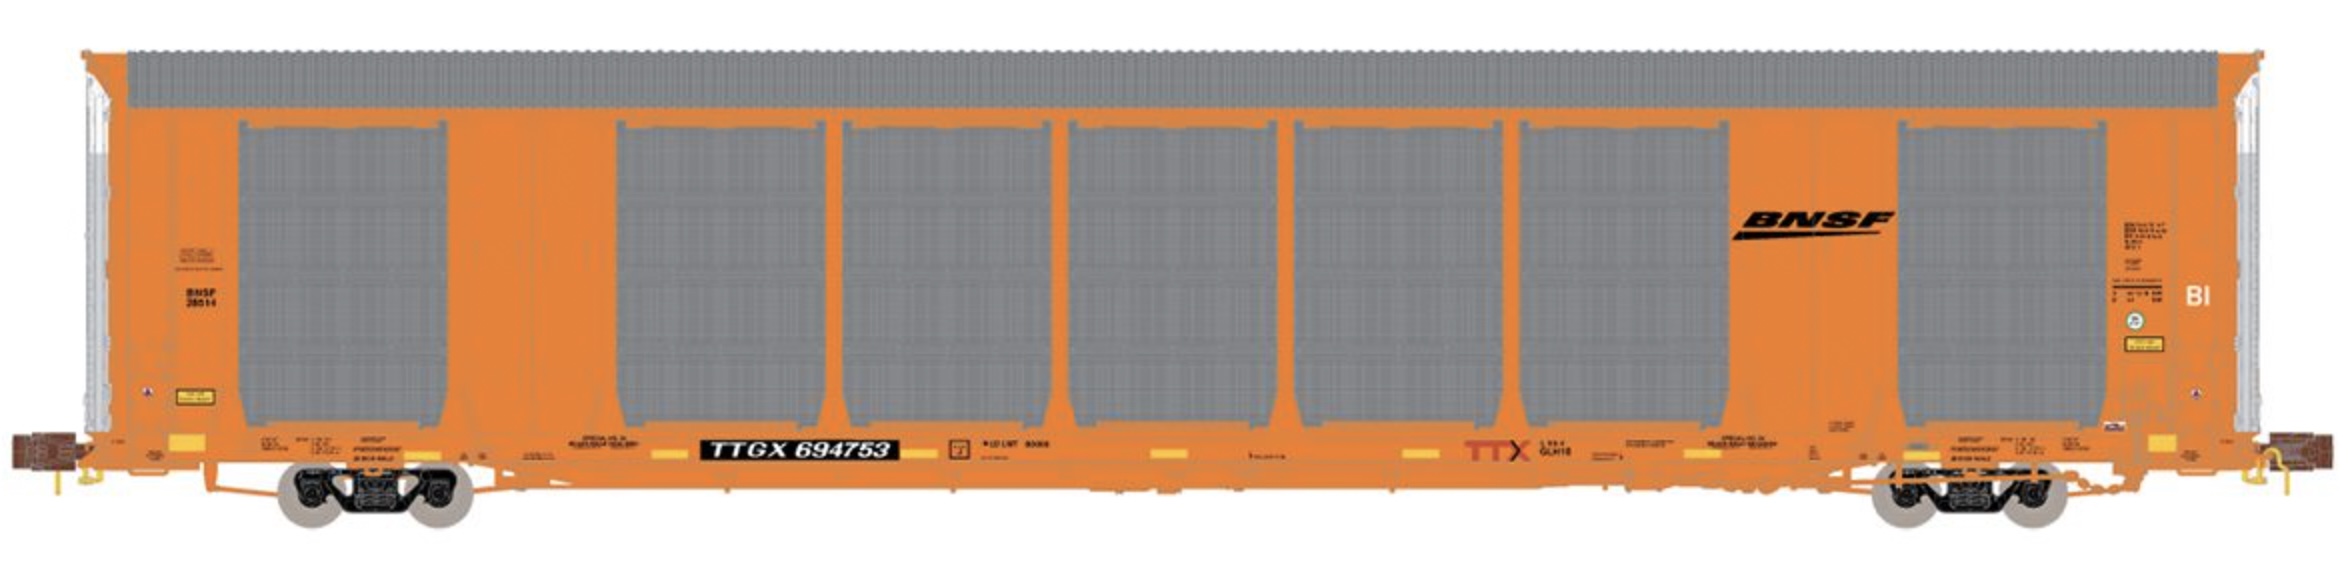 N Scale - ScaleTrains - SXT33727 - Autorack, Enclosed, Tri-Level - Burlington Northern Santa Fe - 694755